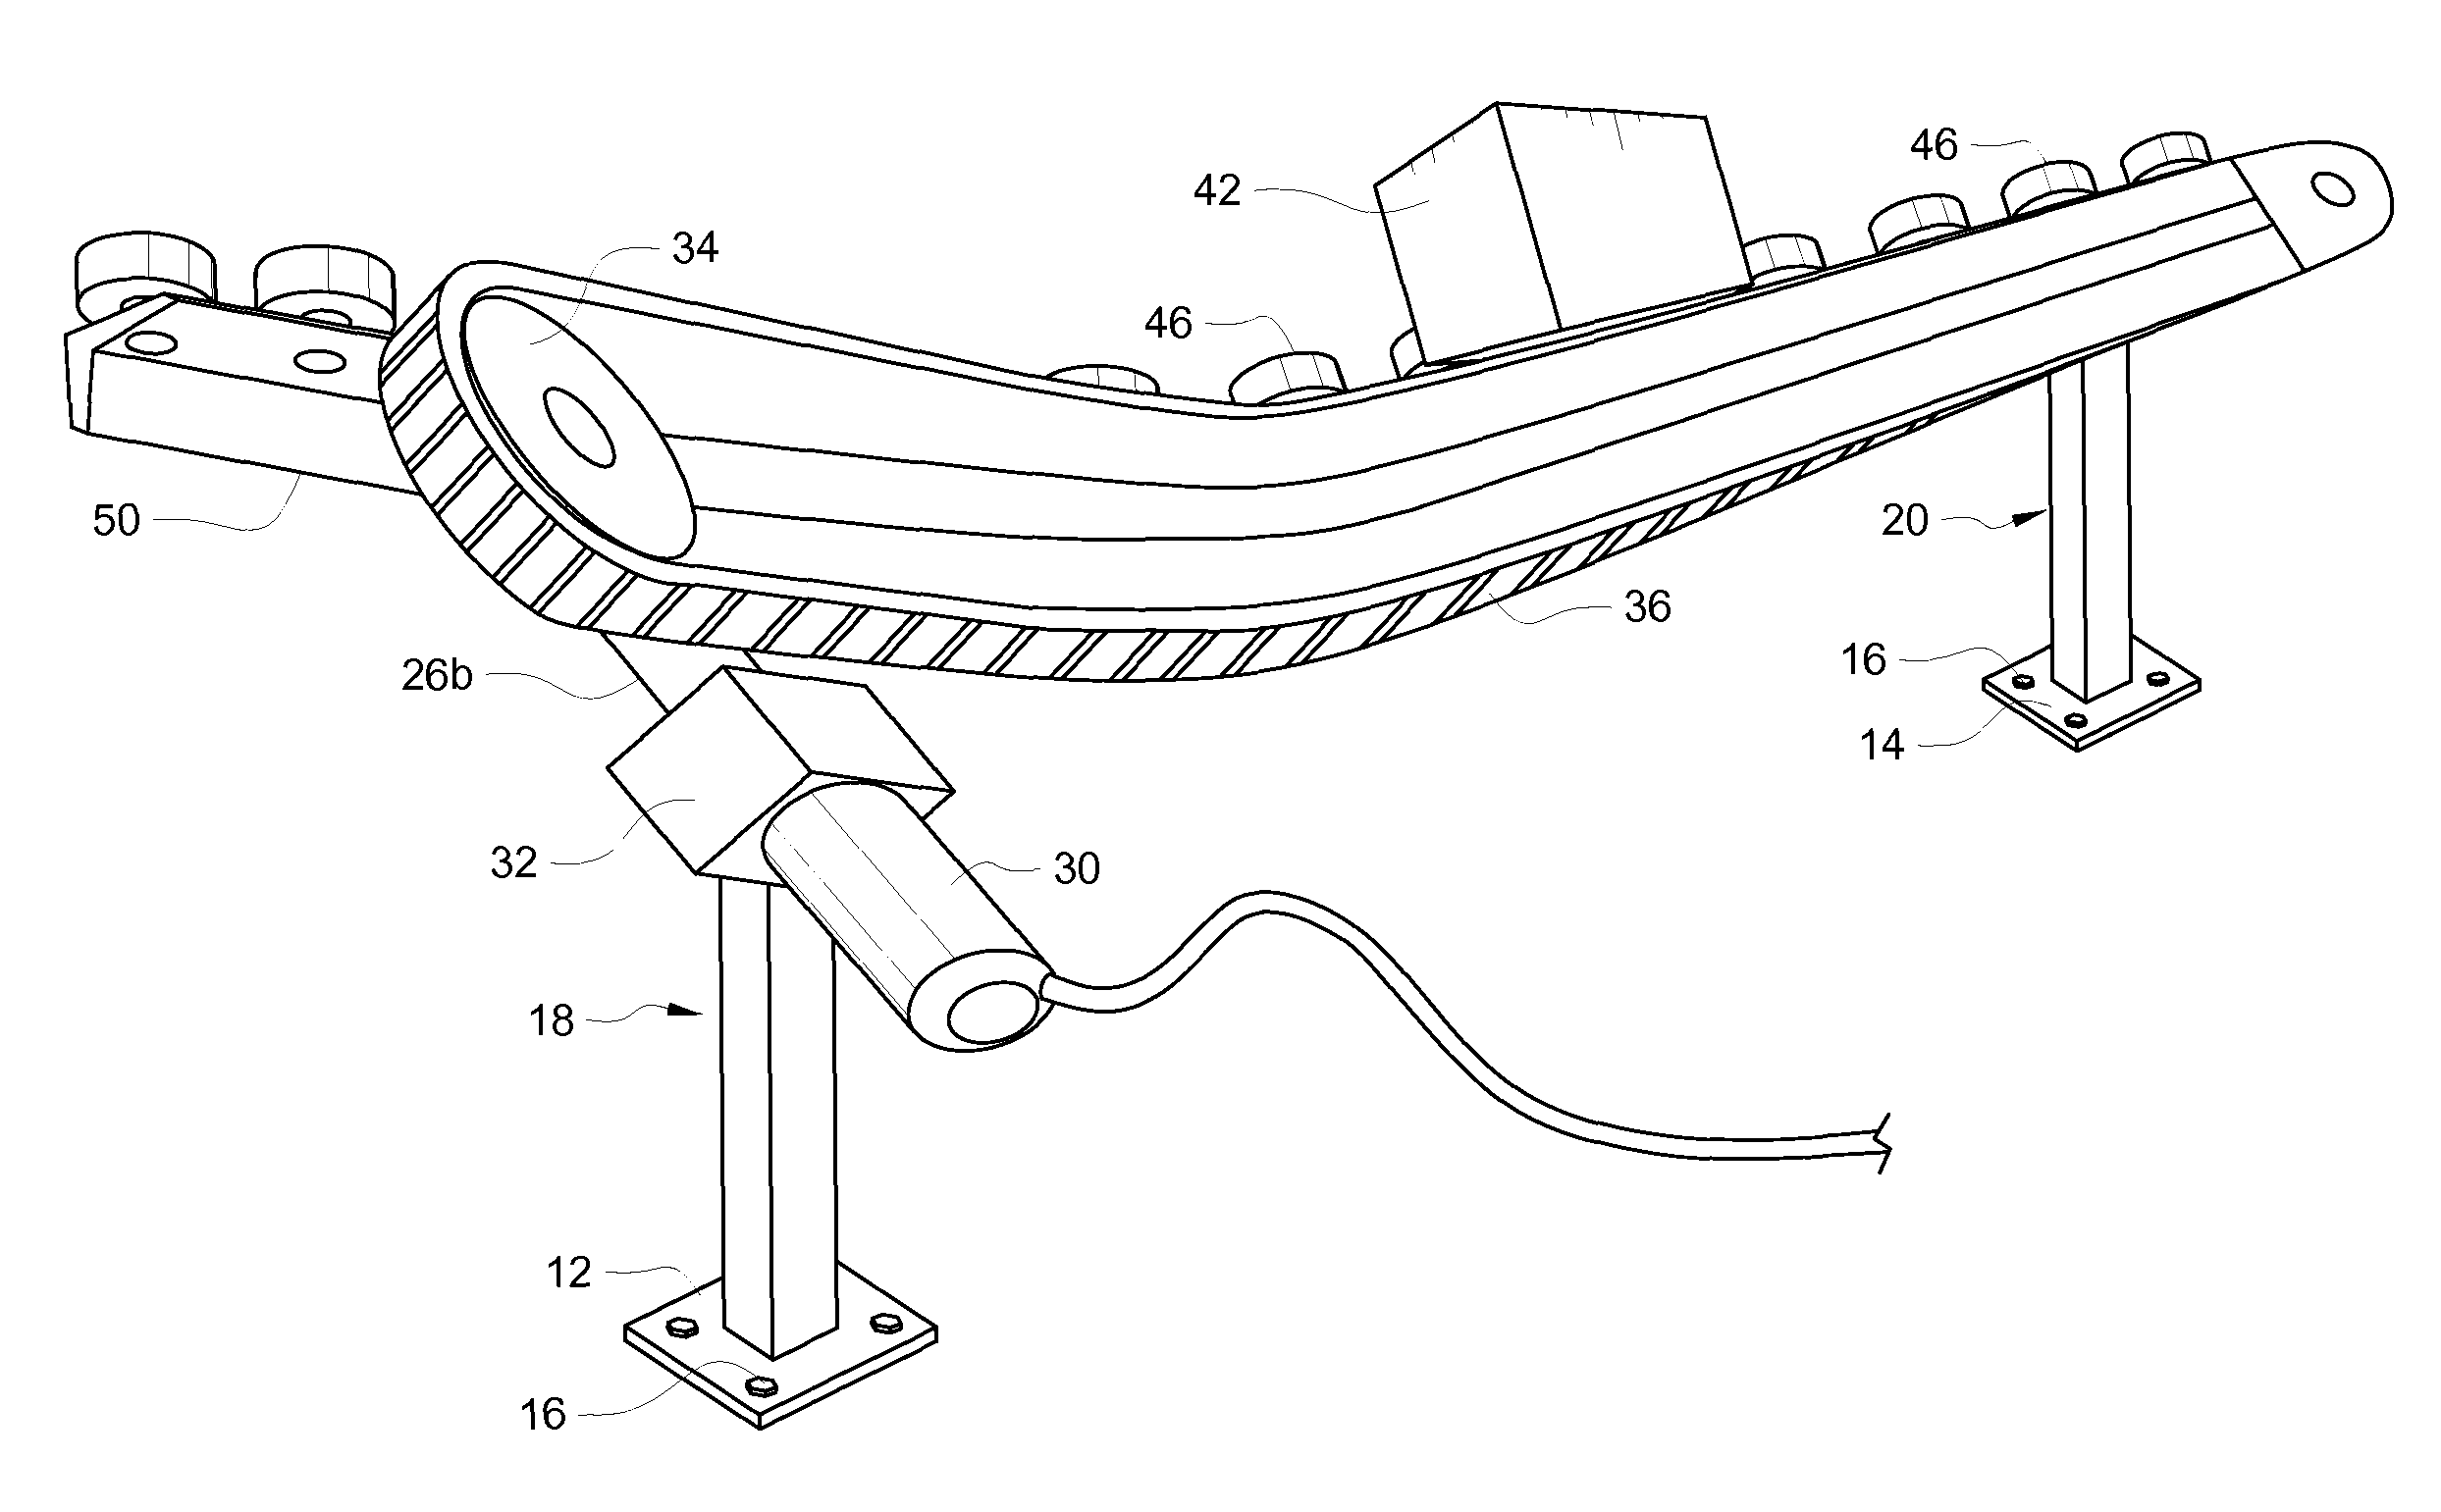 V-shaped product conveyor